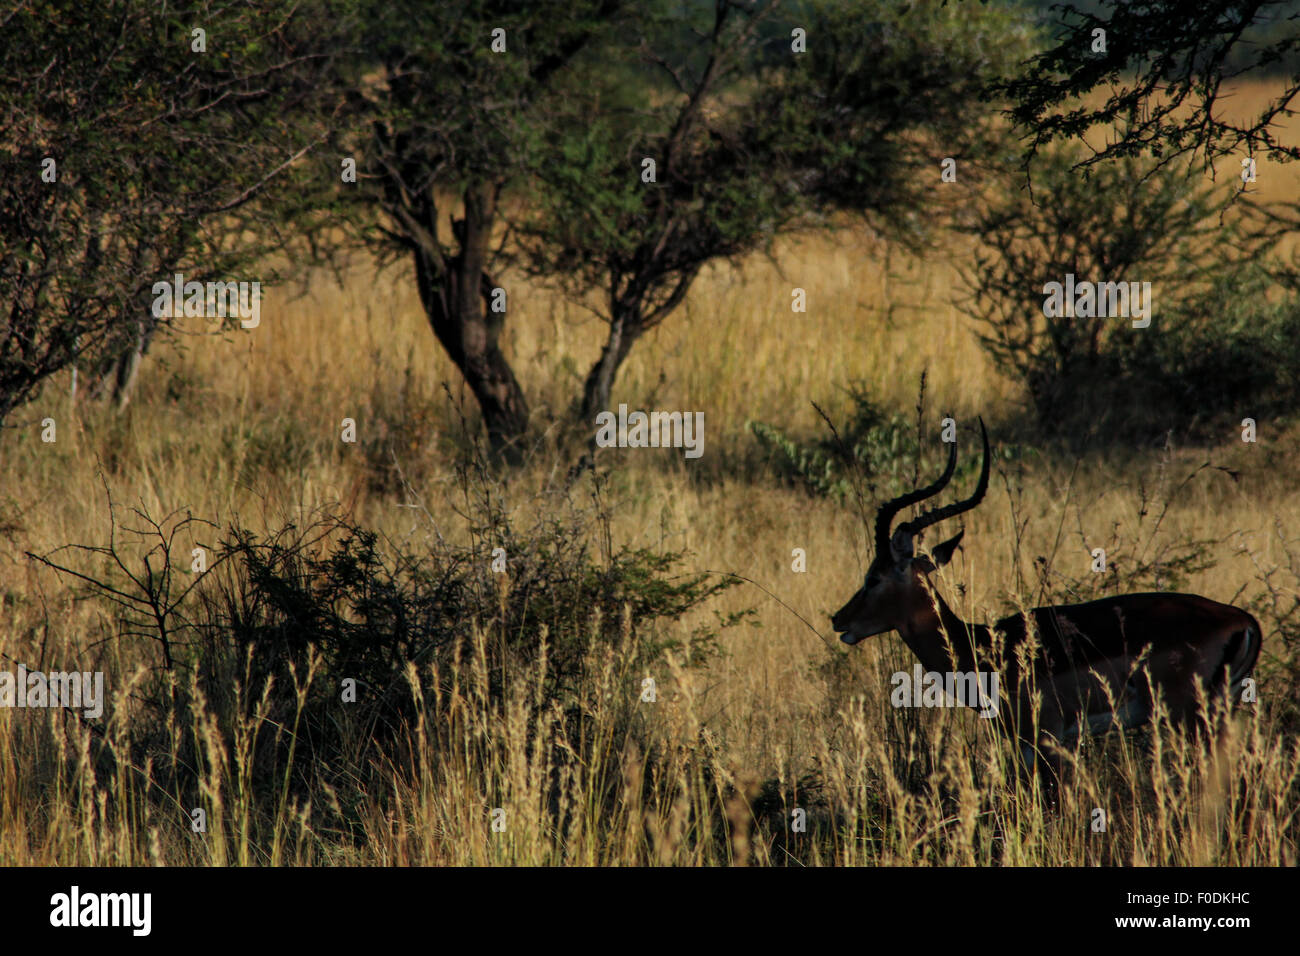 Un Impala bachiller silueteado en sabana arbolada de África Foto de stock